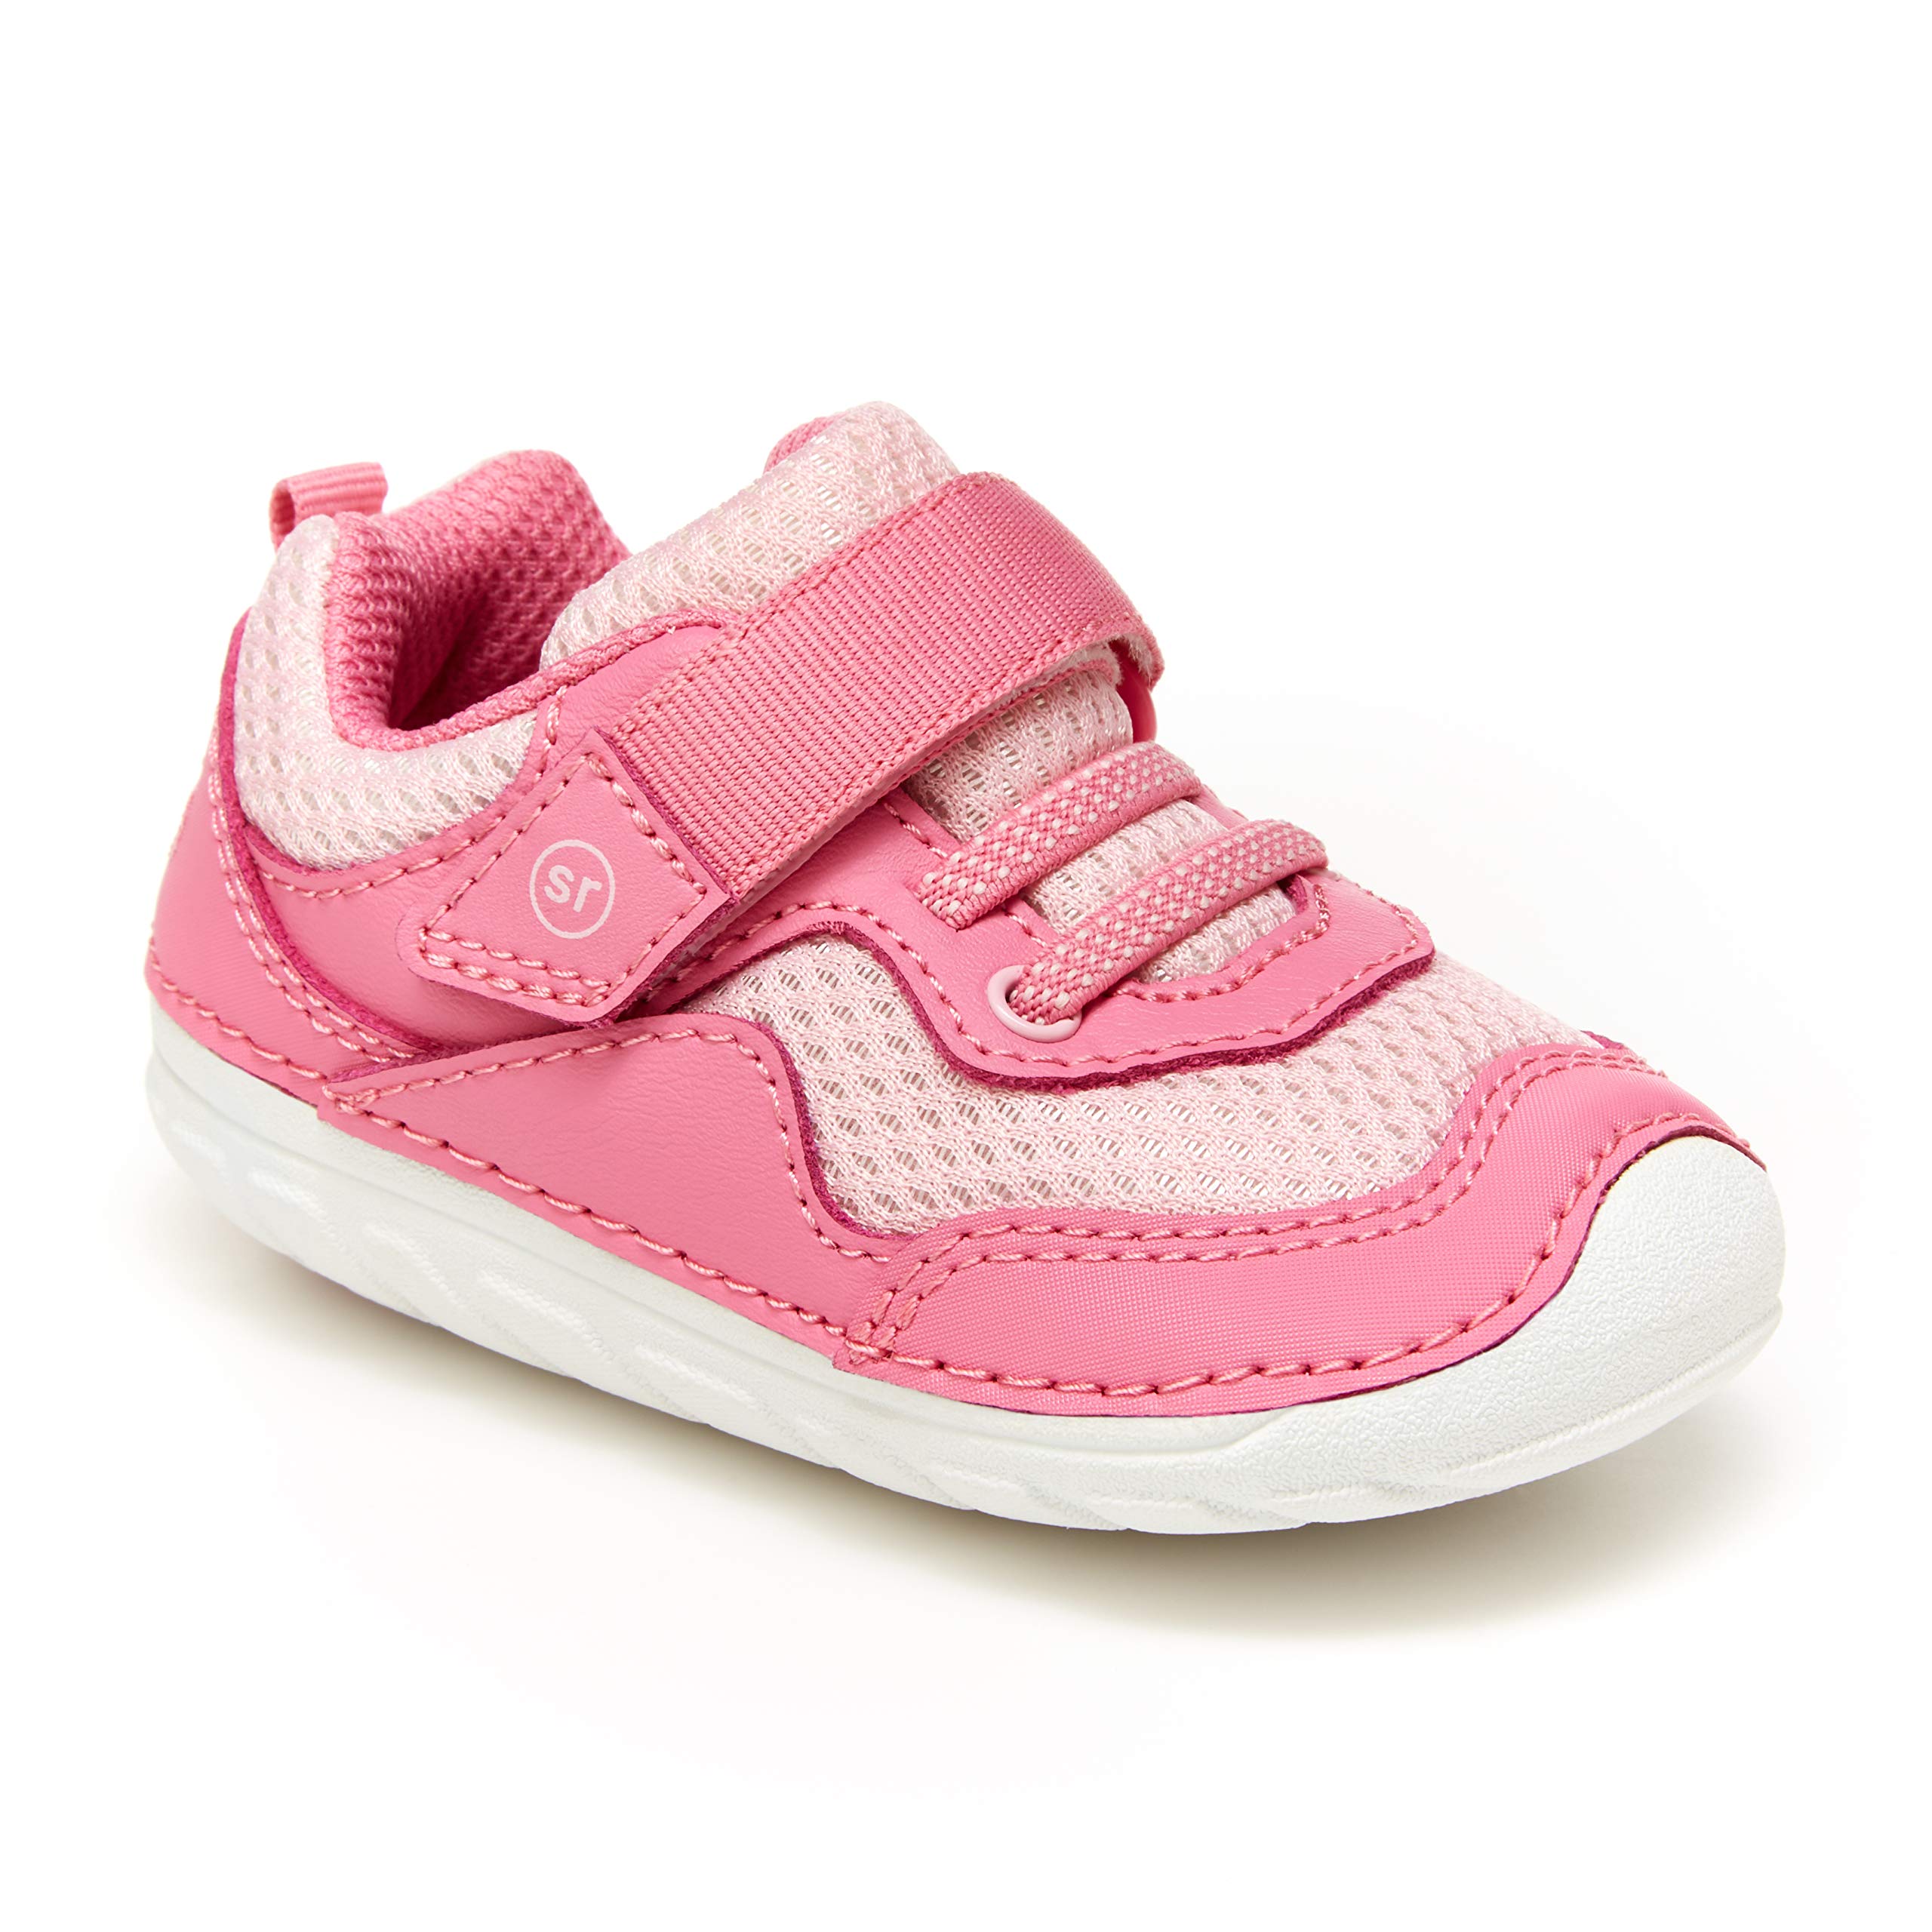 Stride Rite Unisex-Child Soft Motion Rhett Sneaker